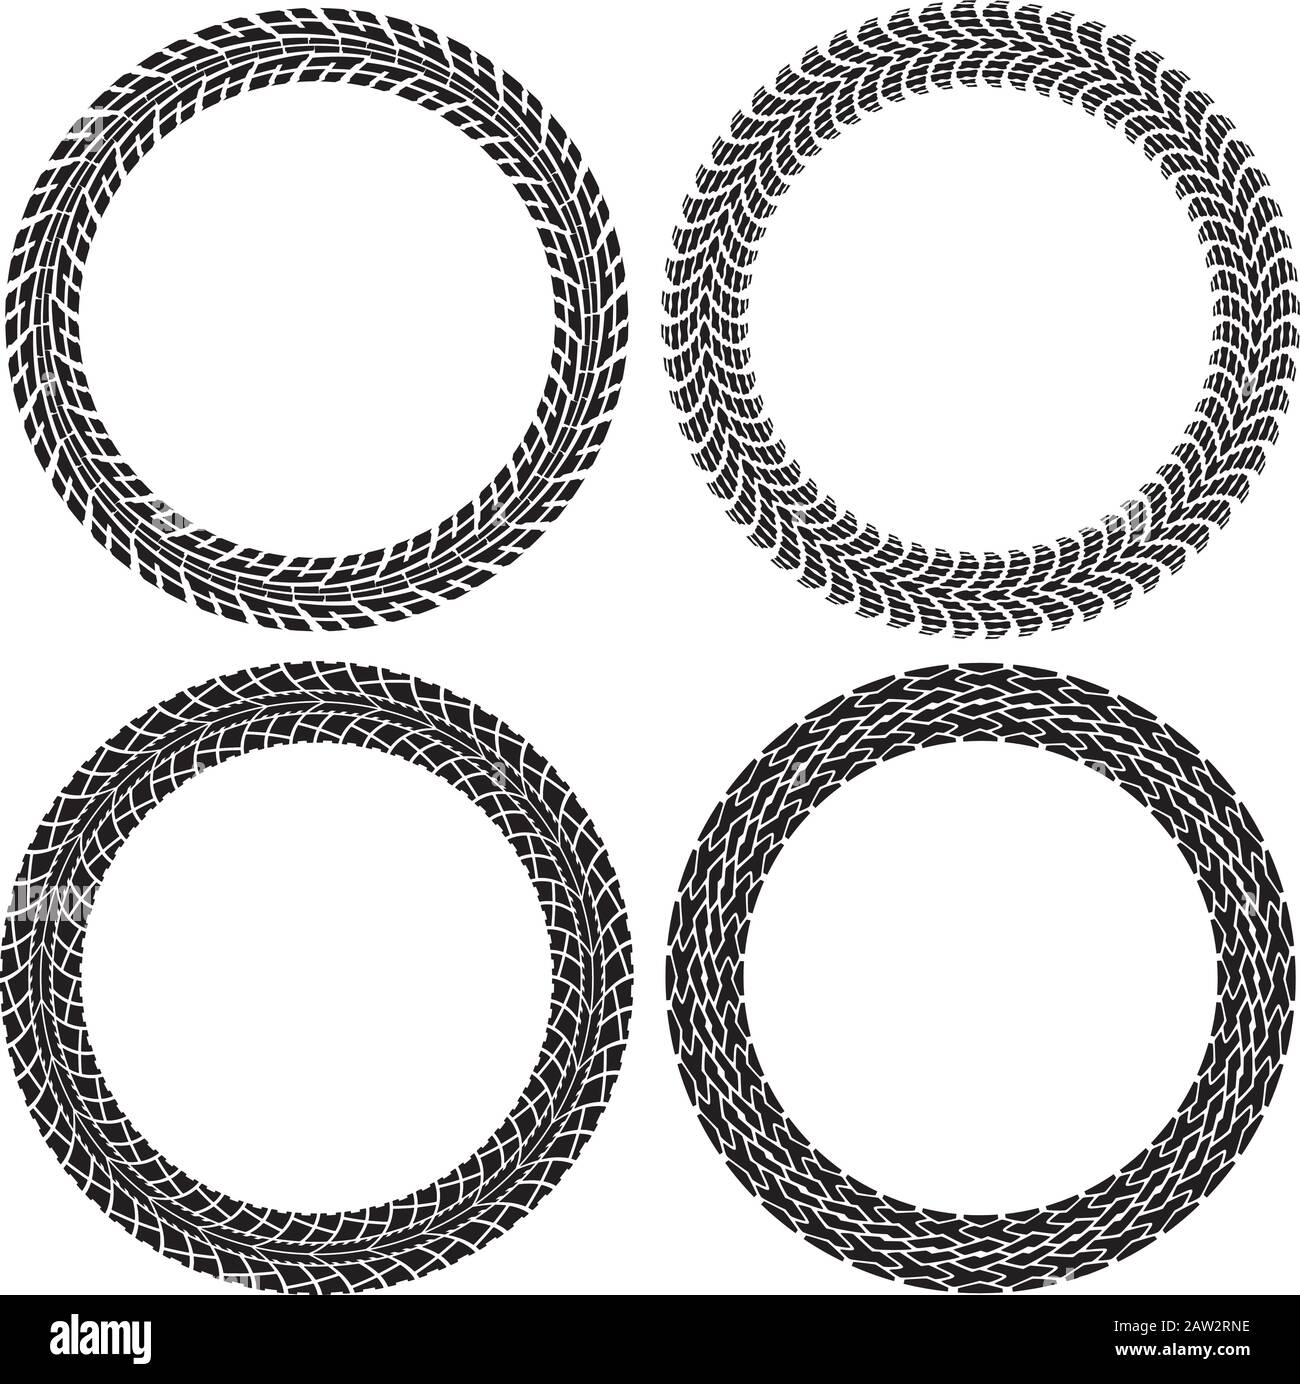 set vettoriale di tracce di pneumatici tondi. modelli di cerchi per auto e trattore. disegno di stampe di pneumatici e spazio di copia per il testo. illustrazione in bianco e nero Illustrazione Vettoriale